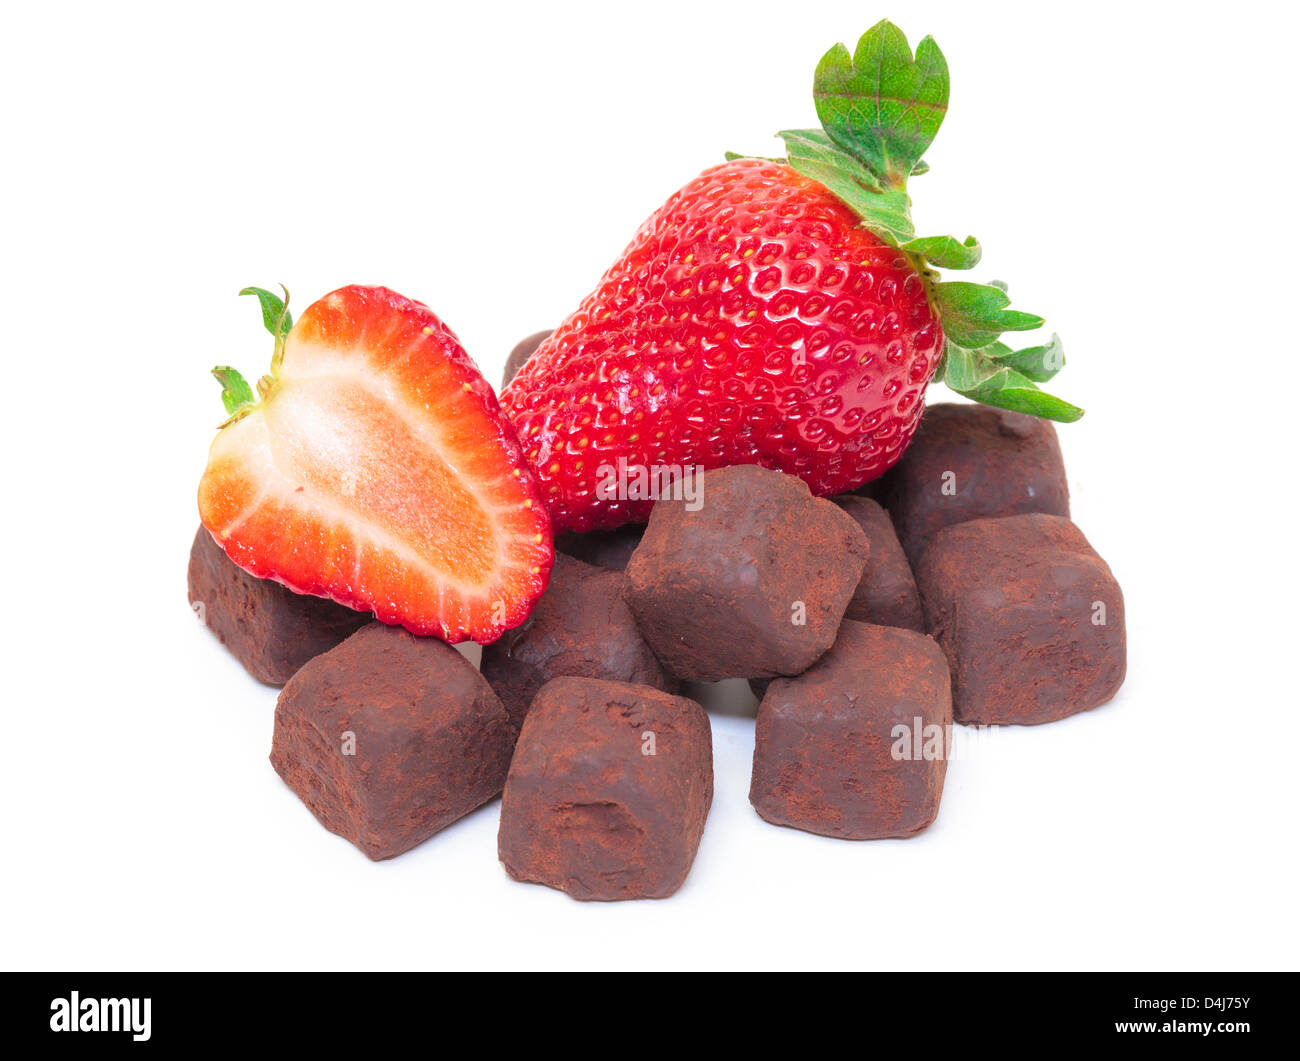 Petits fruits mûrs avec des chocolats à la fraise rouge sur fond blanc Banque D'Images